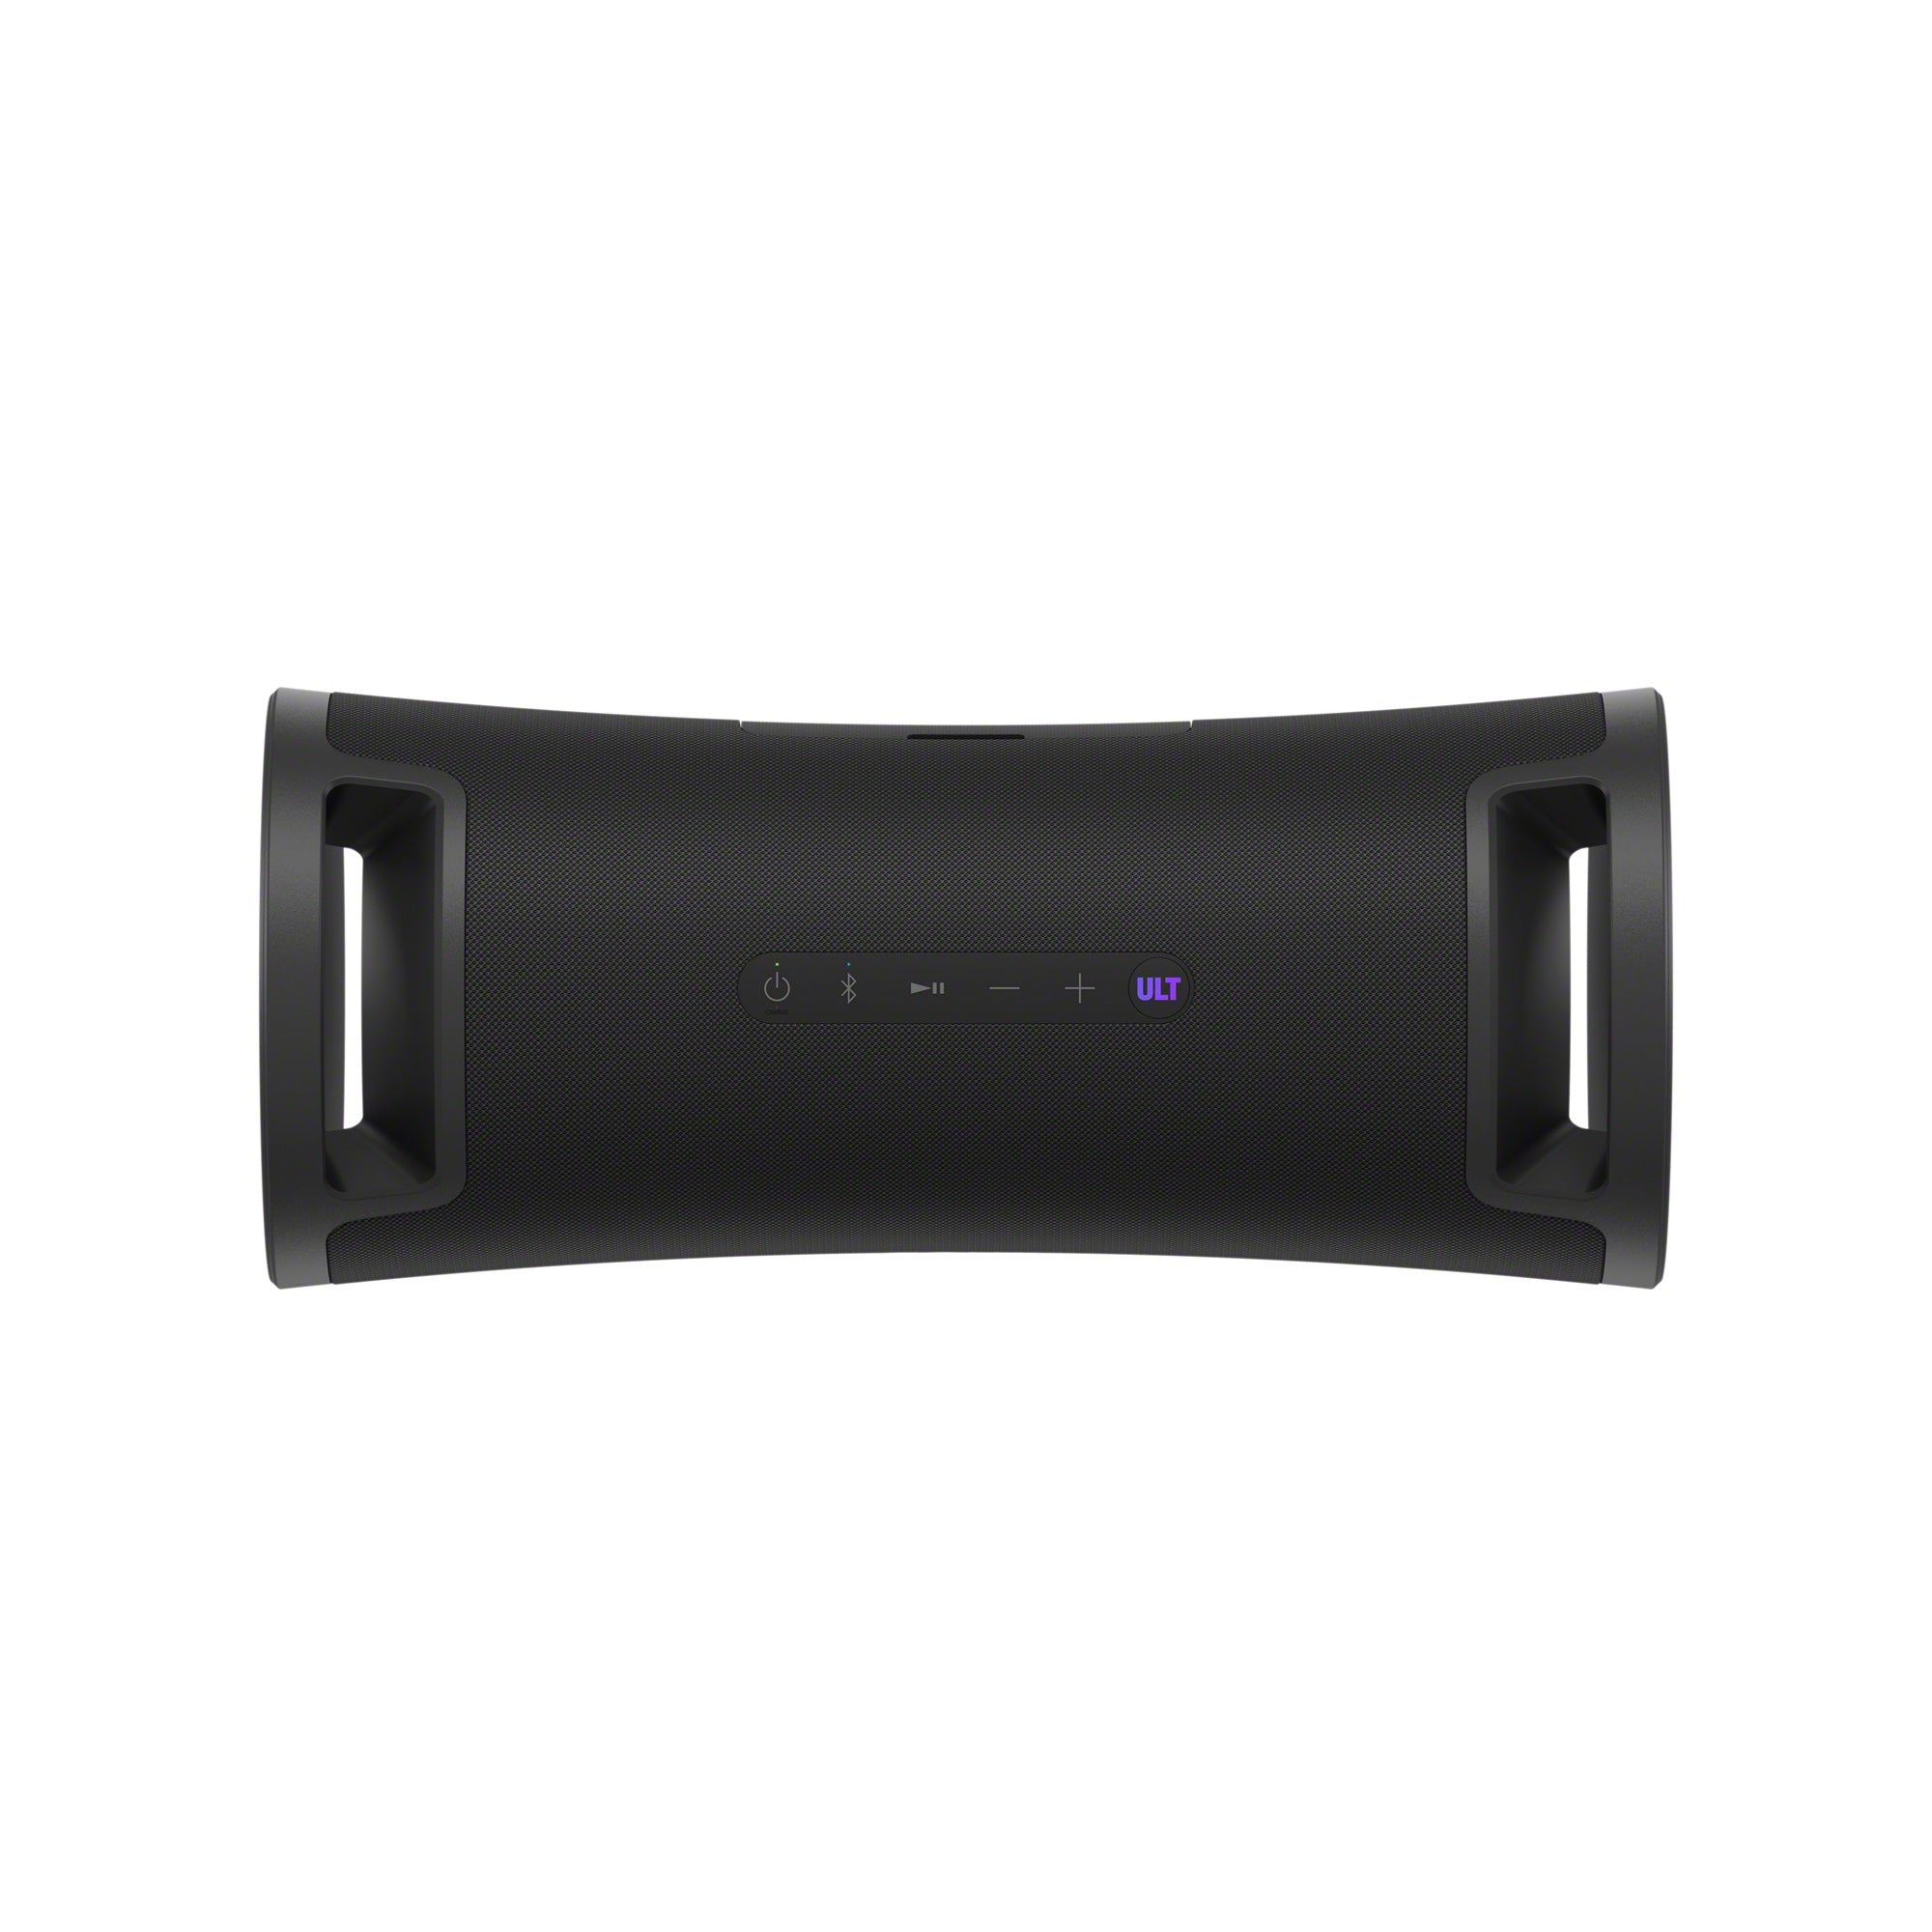 בידורית רמקול נייד  SONY מסדרת ULT POWER SOUND ULT70